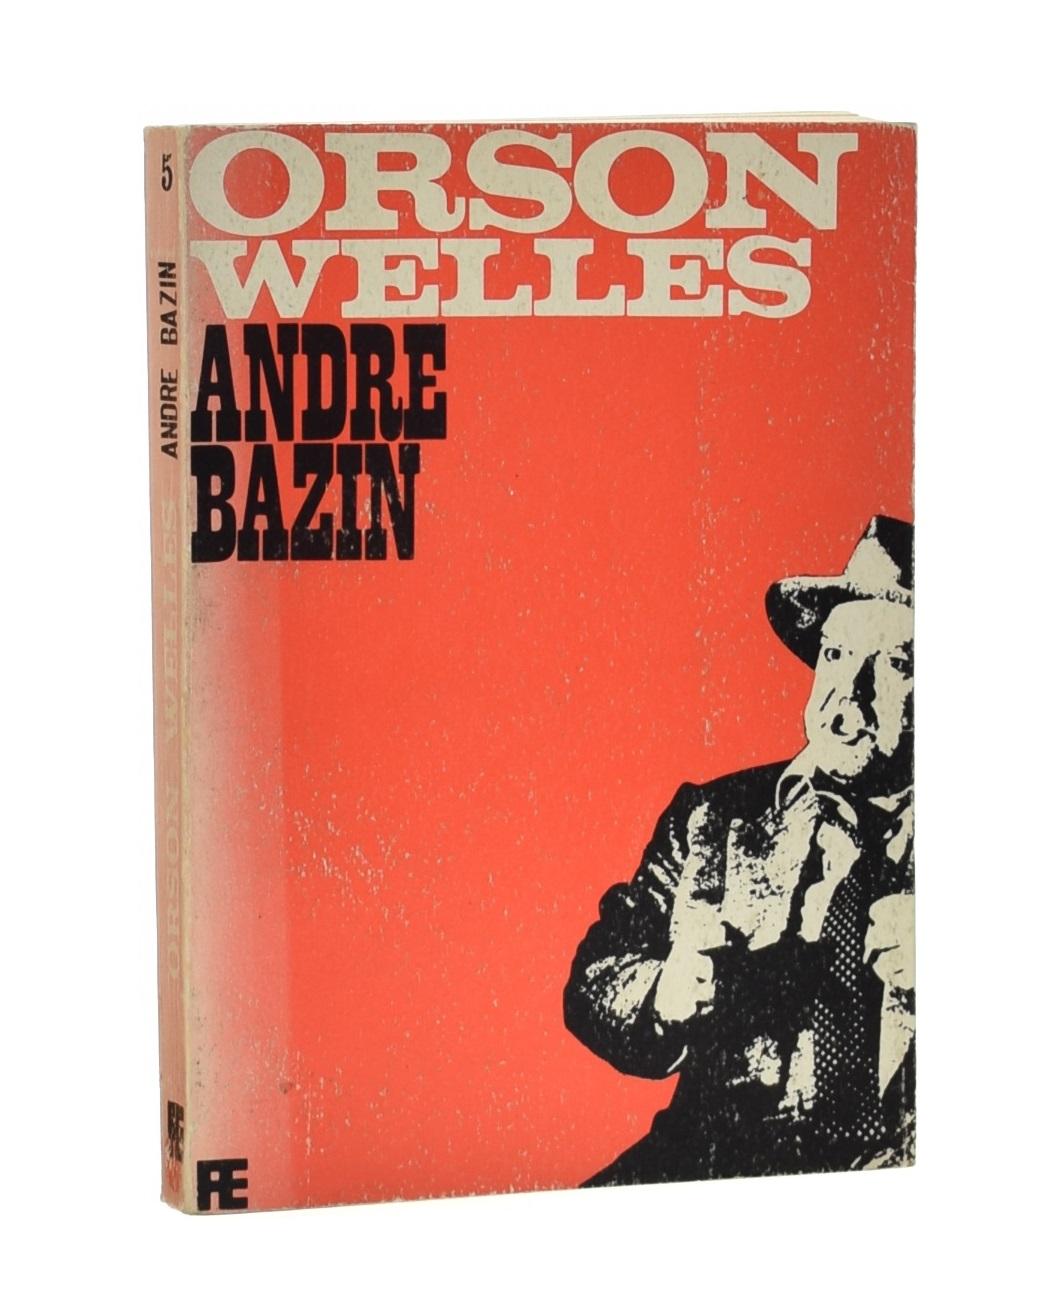 ORSON WELLES - BAZIN, André